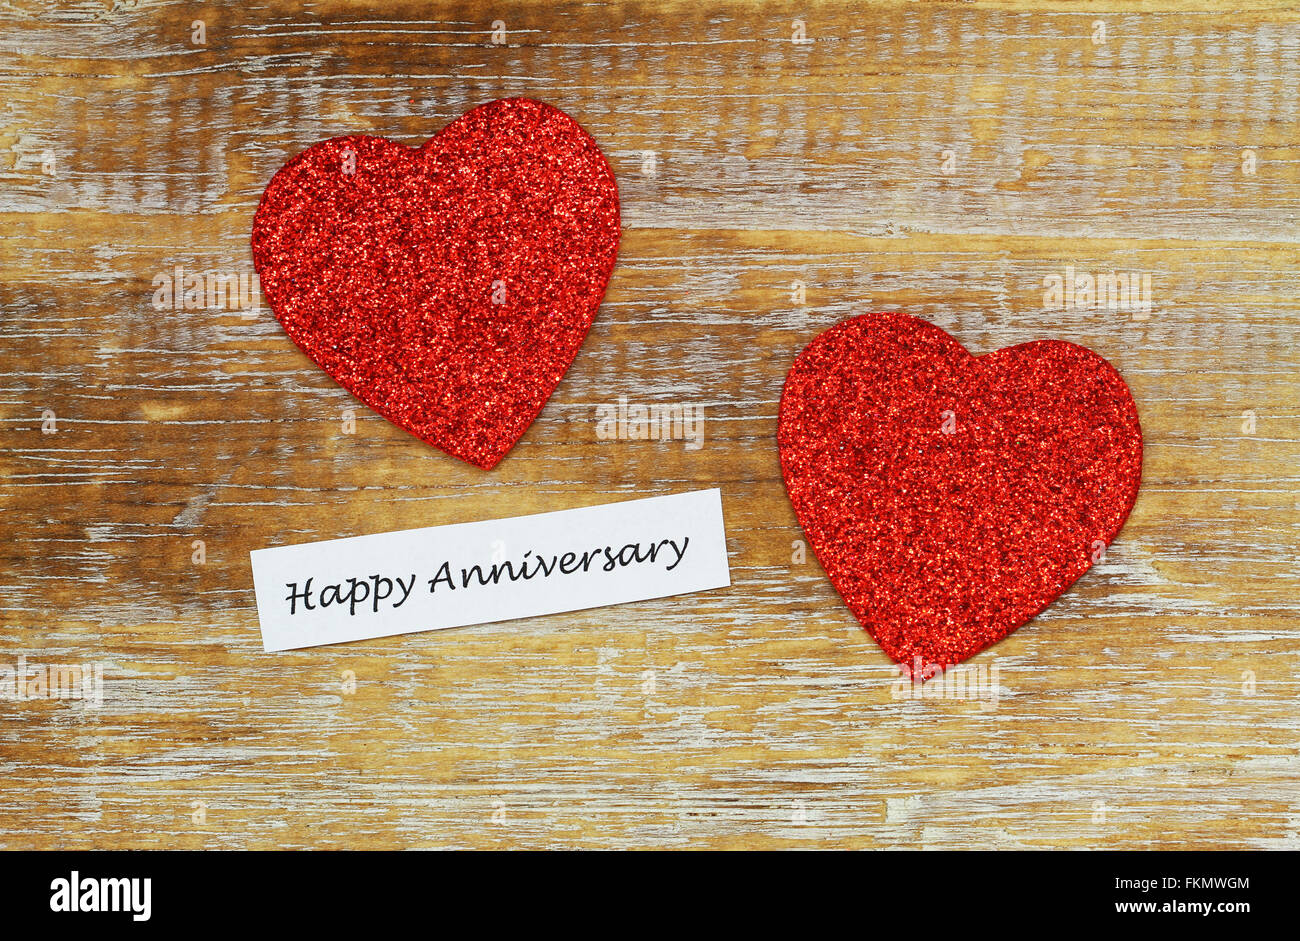 Feliz Aniversario tarjeta con dos corazones rojos brillantes sobre la superficie de madera rústica Foto de stock